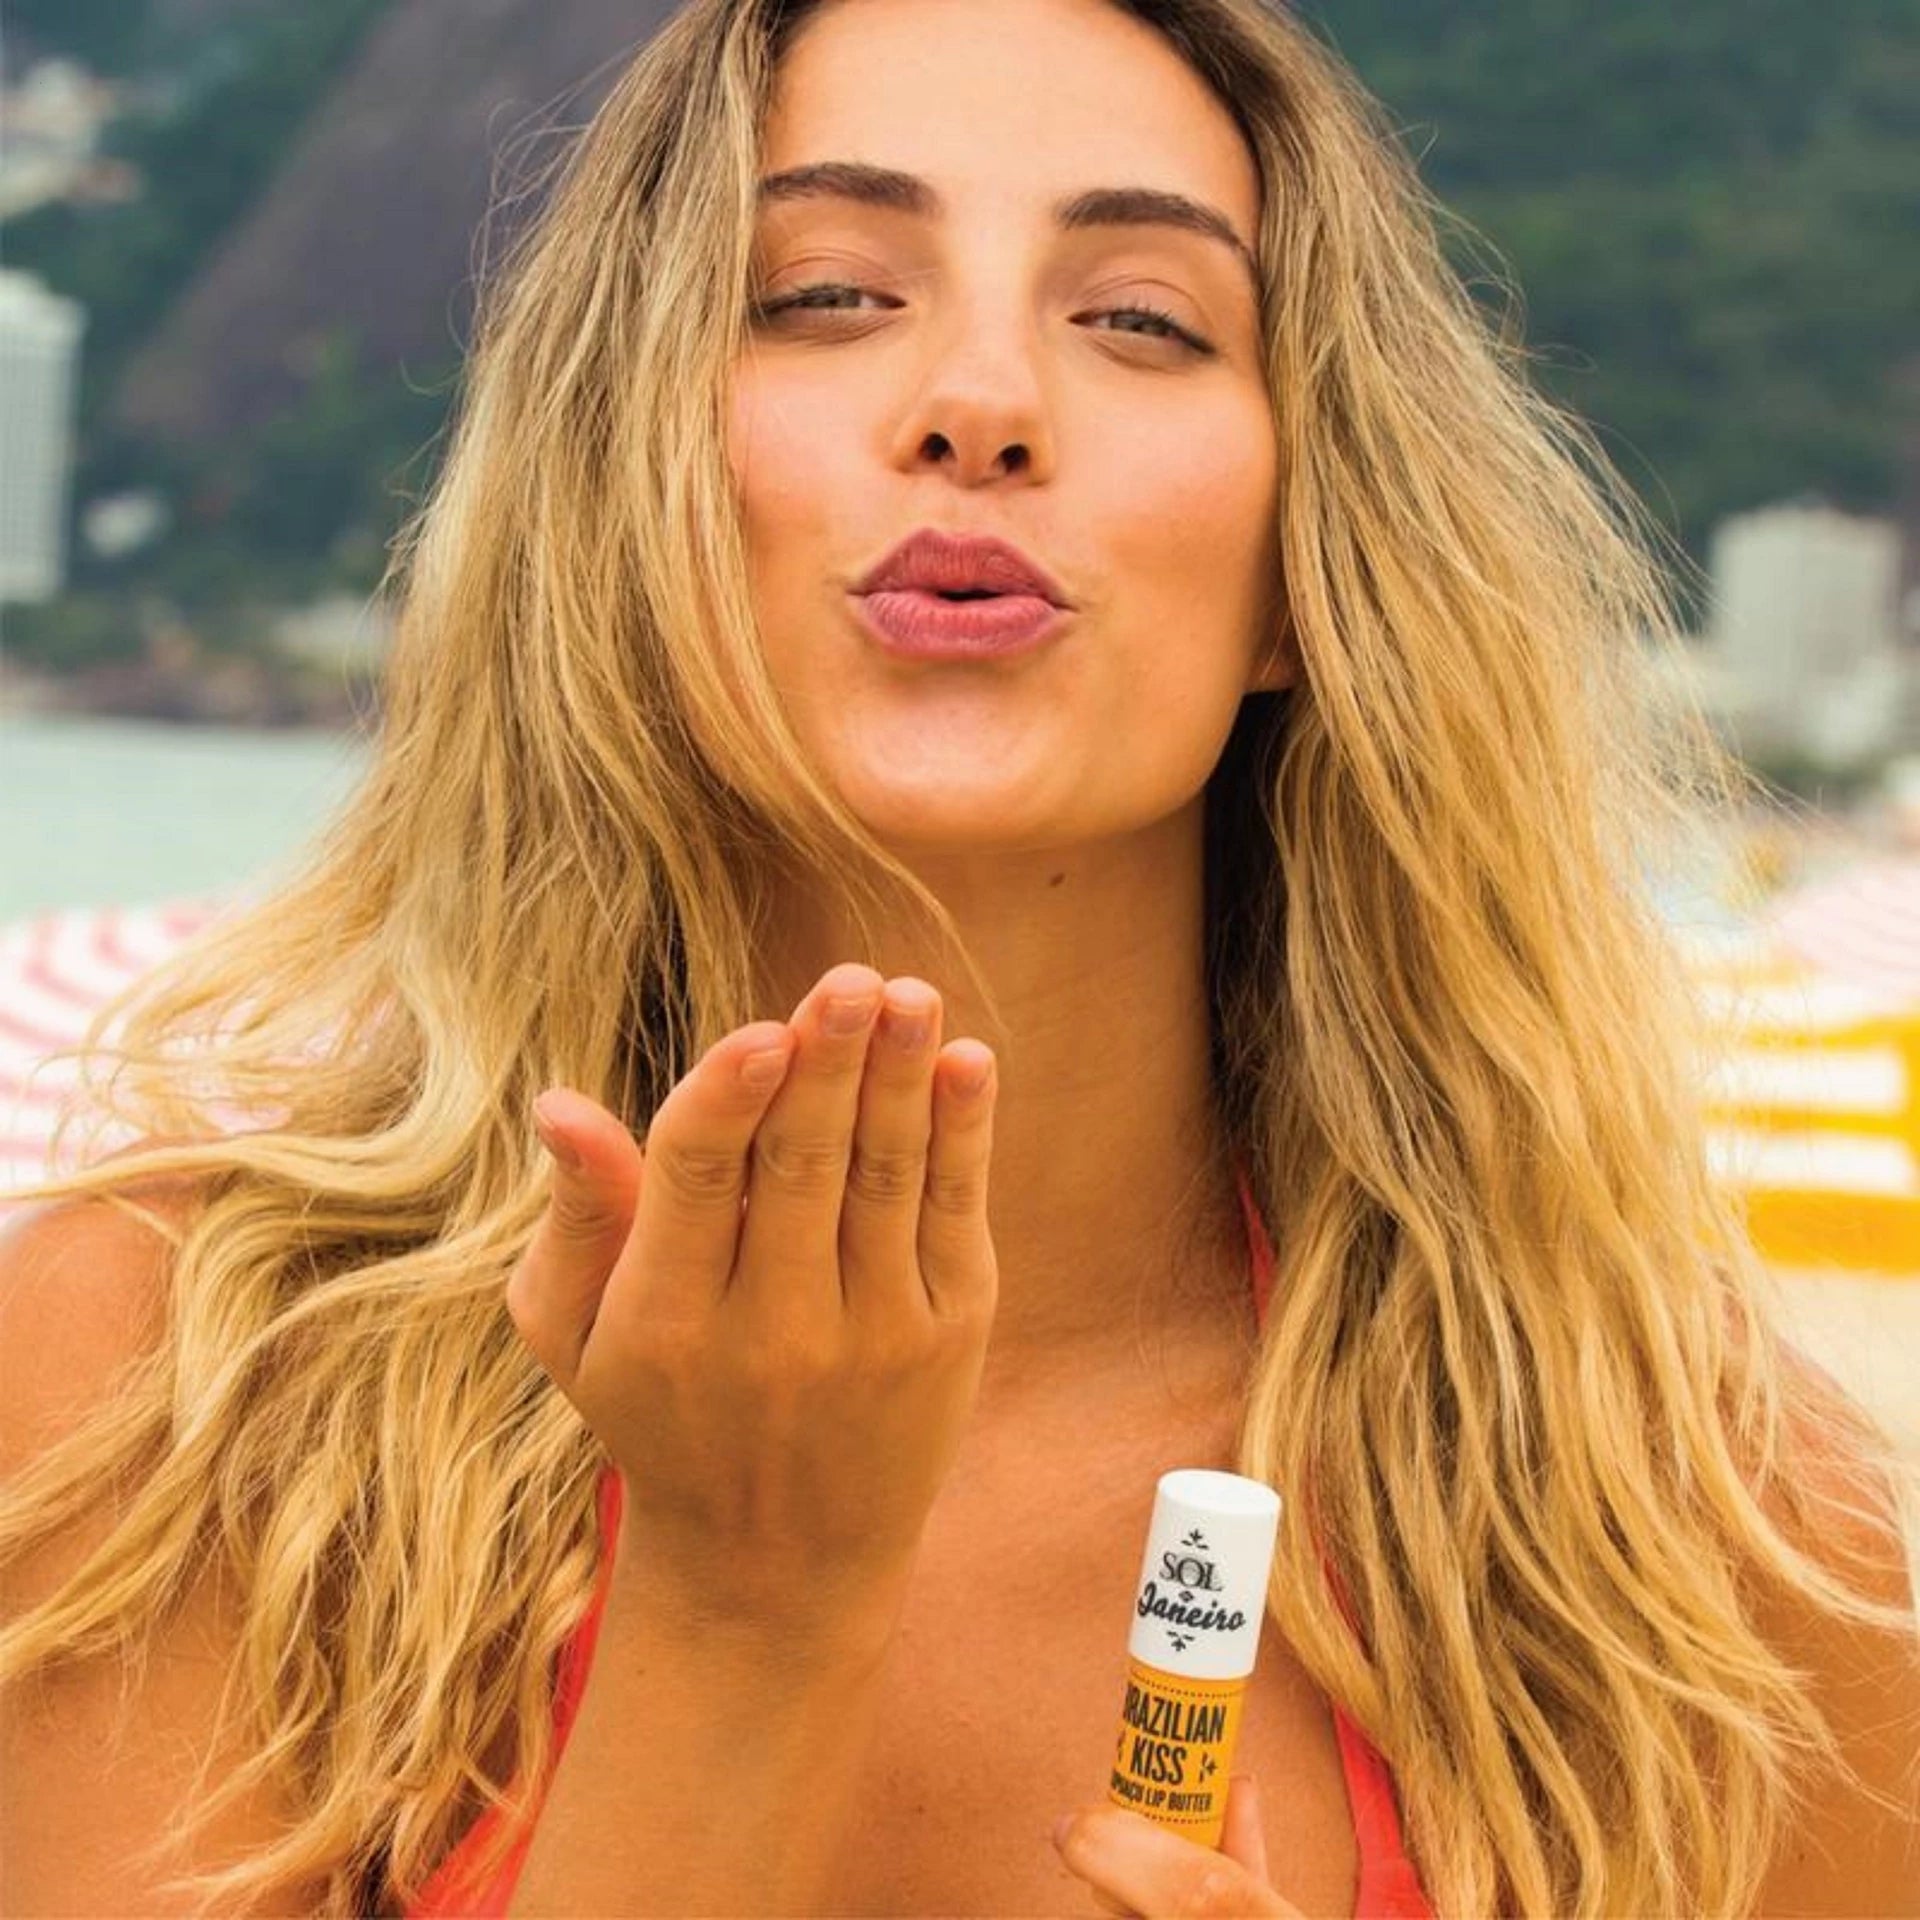 Sol De Janeiro Brazilian Kiss Cupaçu Lip Butter